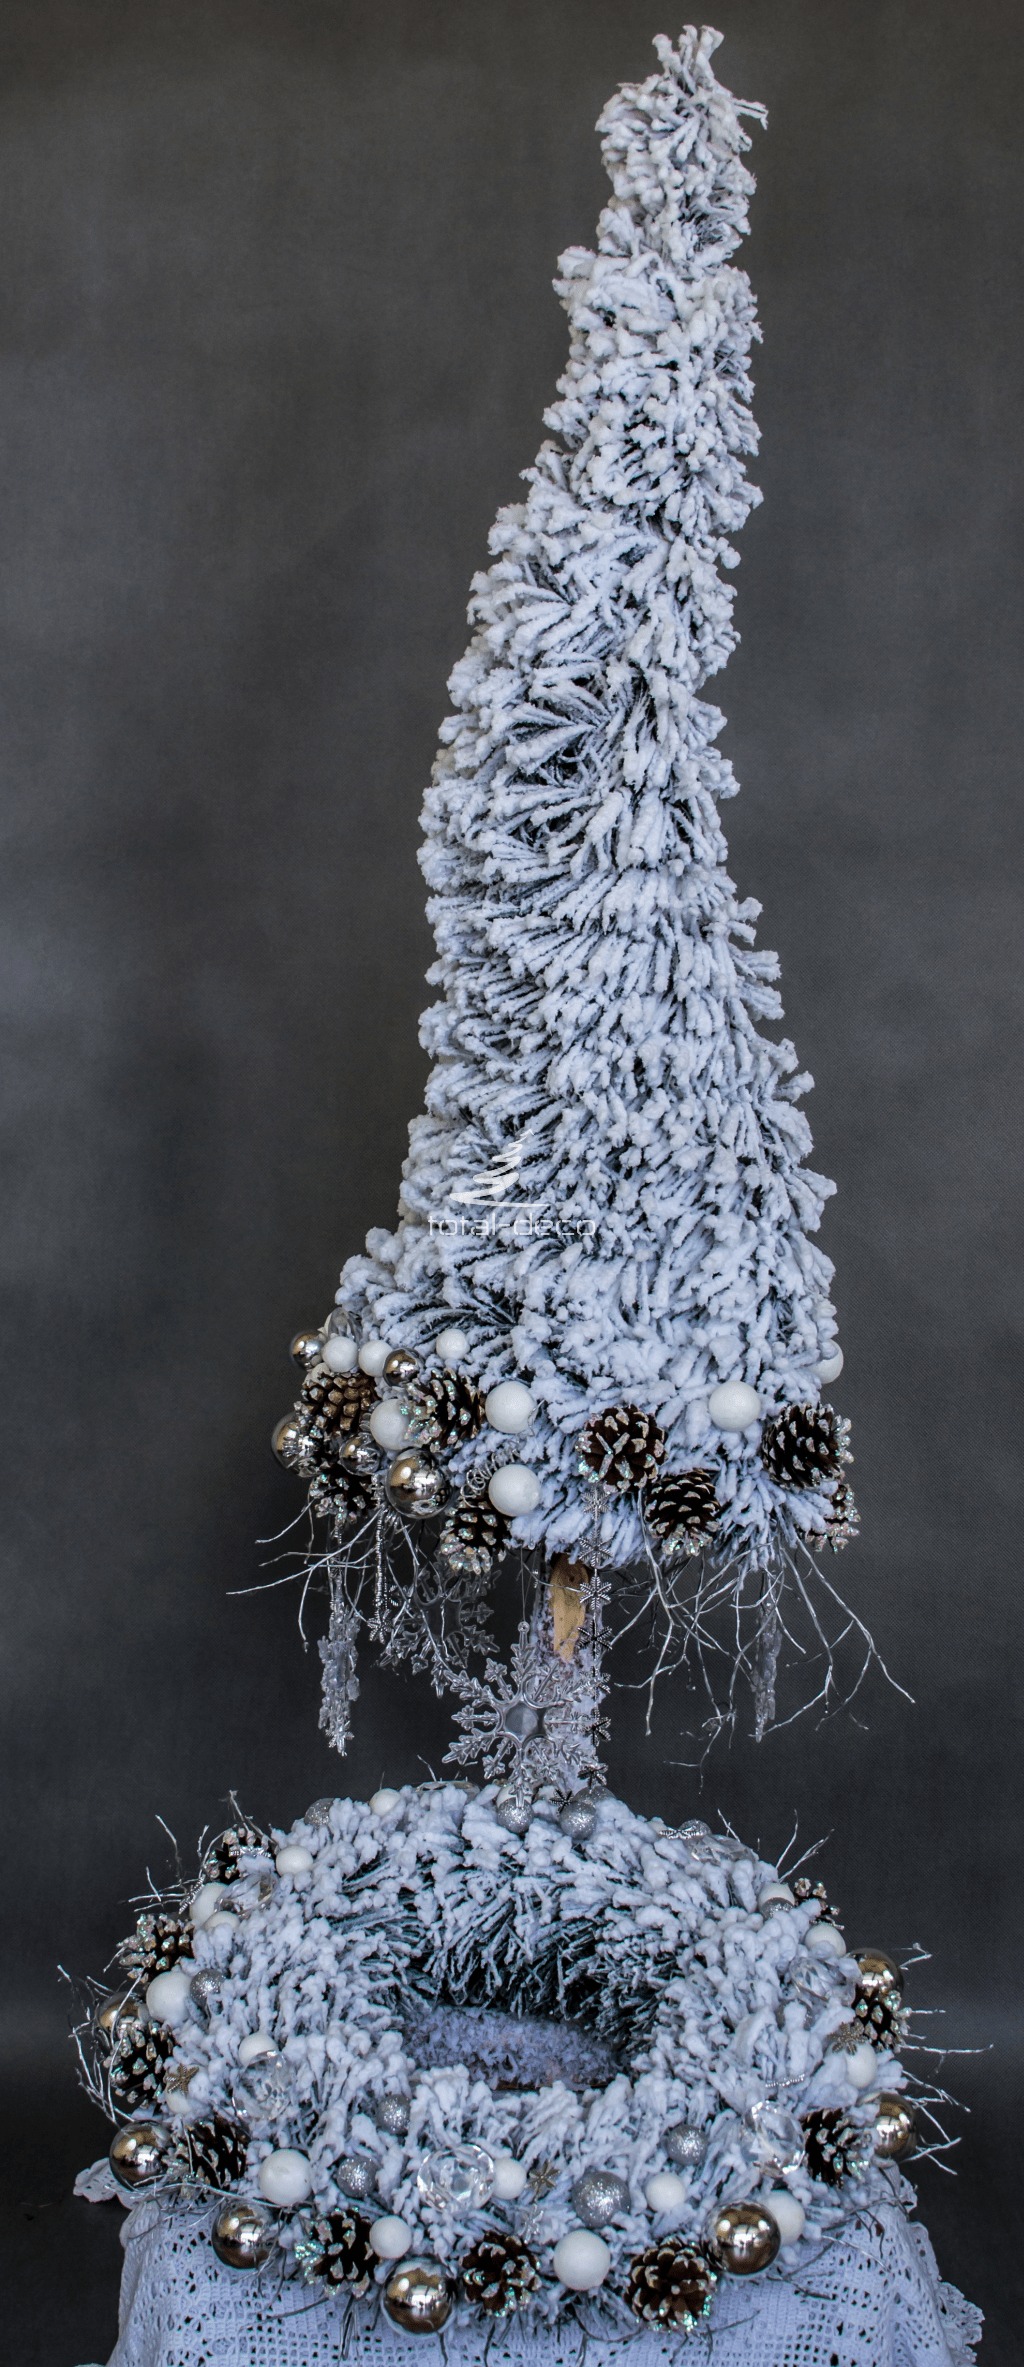 zestawy świąteczne dekoracje bożonarodzeniowe komplet choinka stroik ośnieżona oprószona śniegiem nowoczesna kompozycja